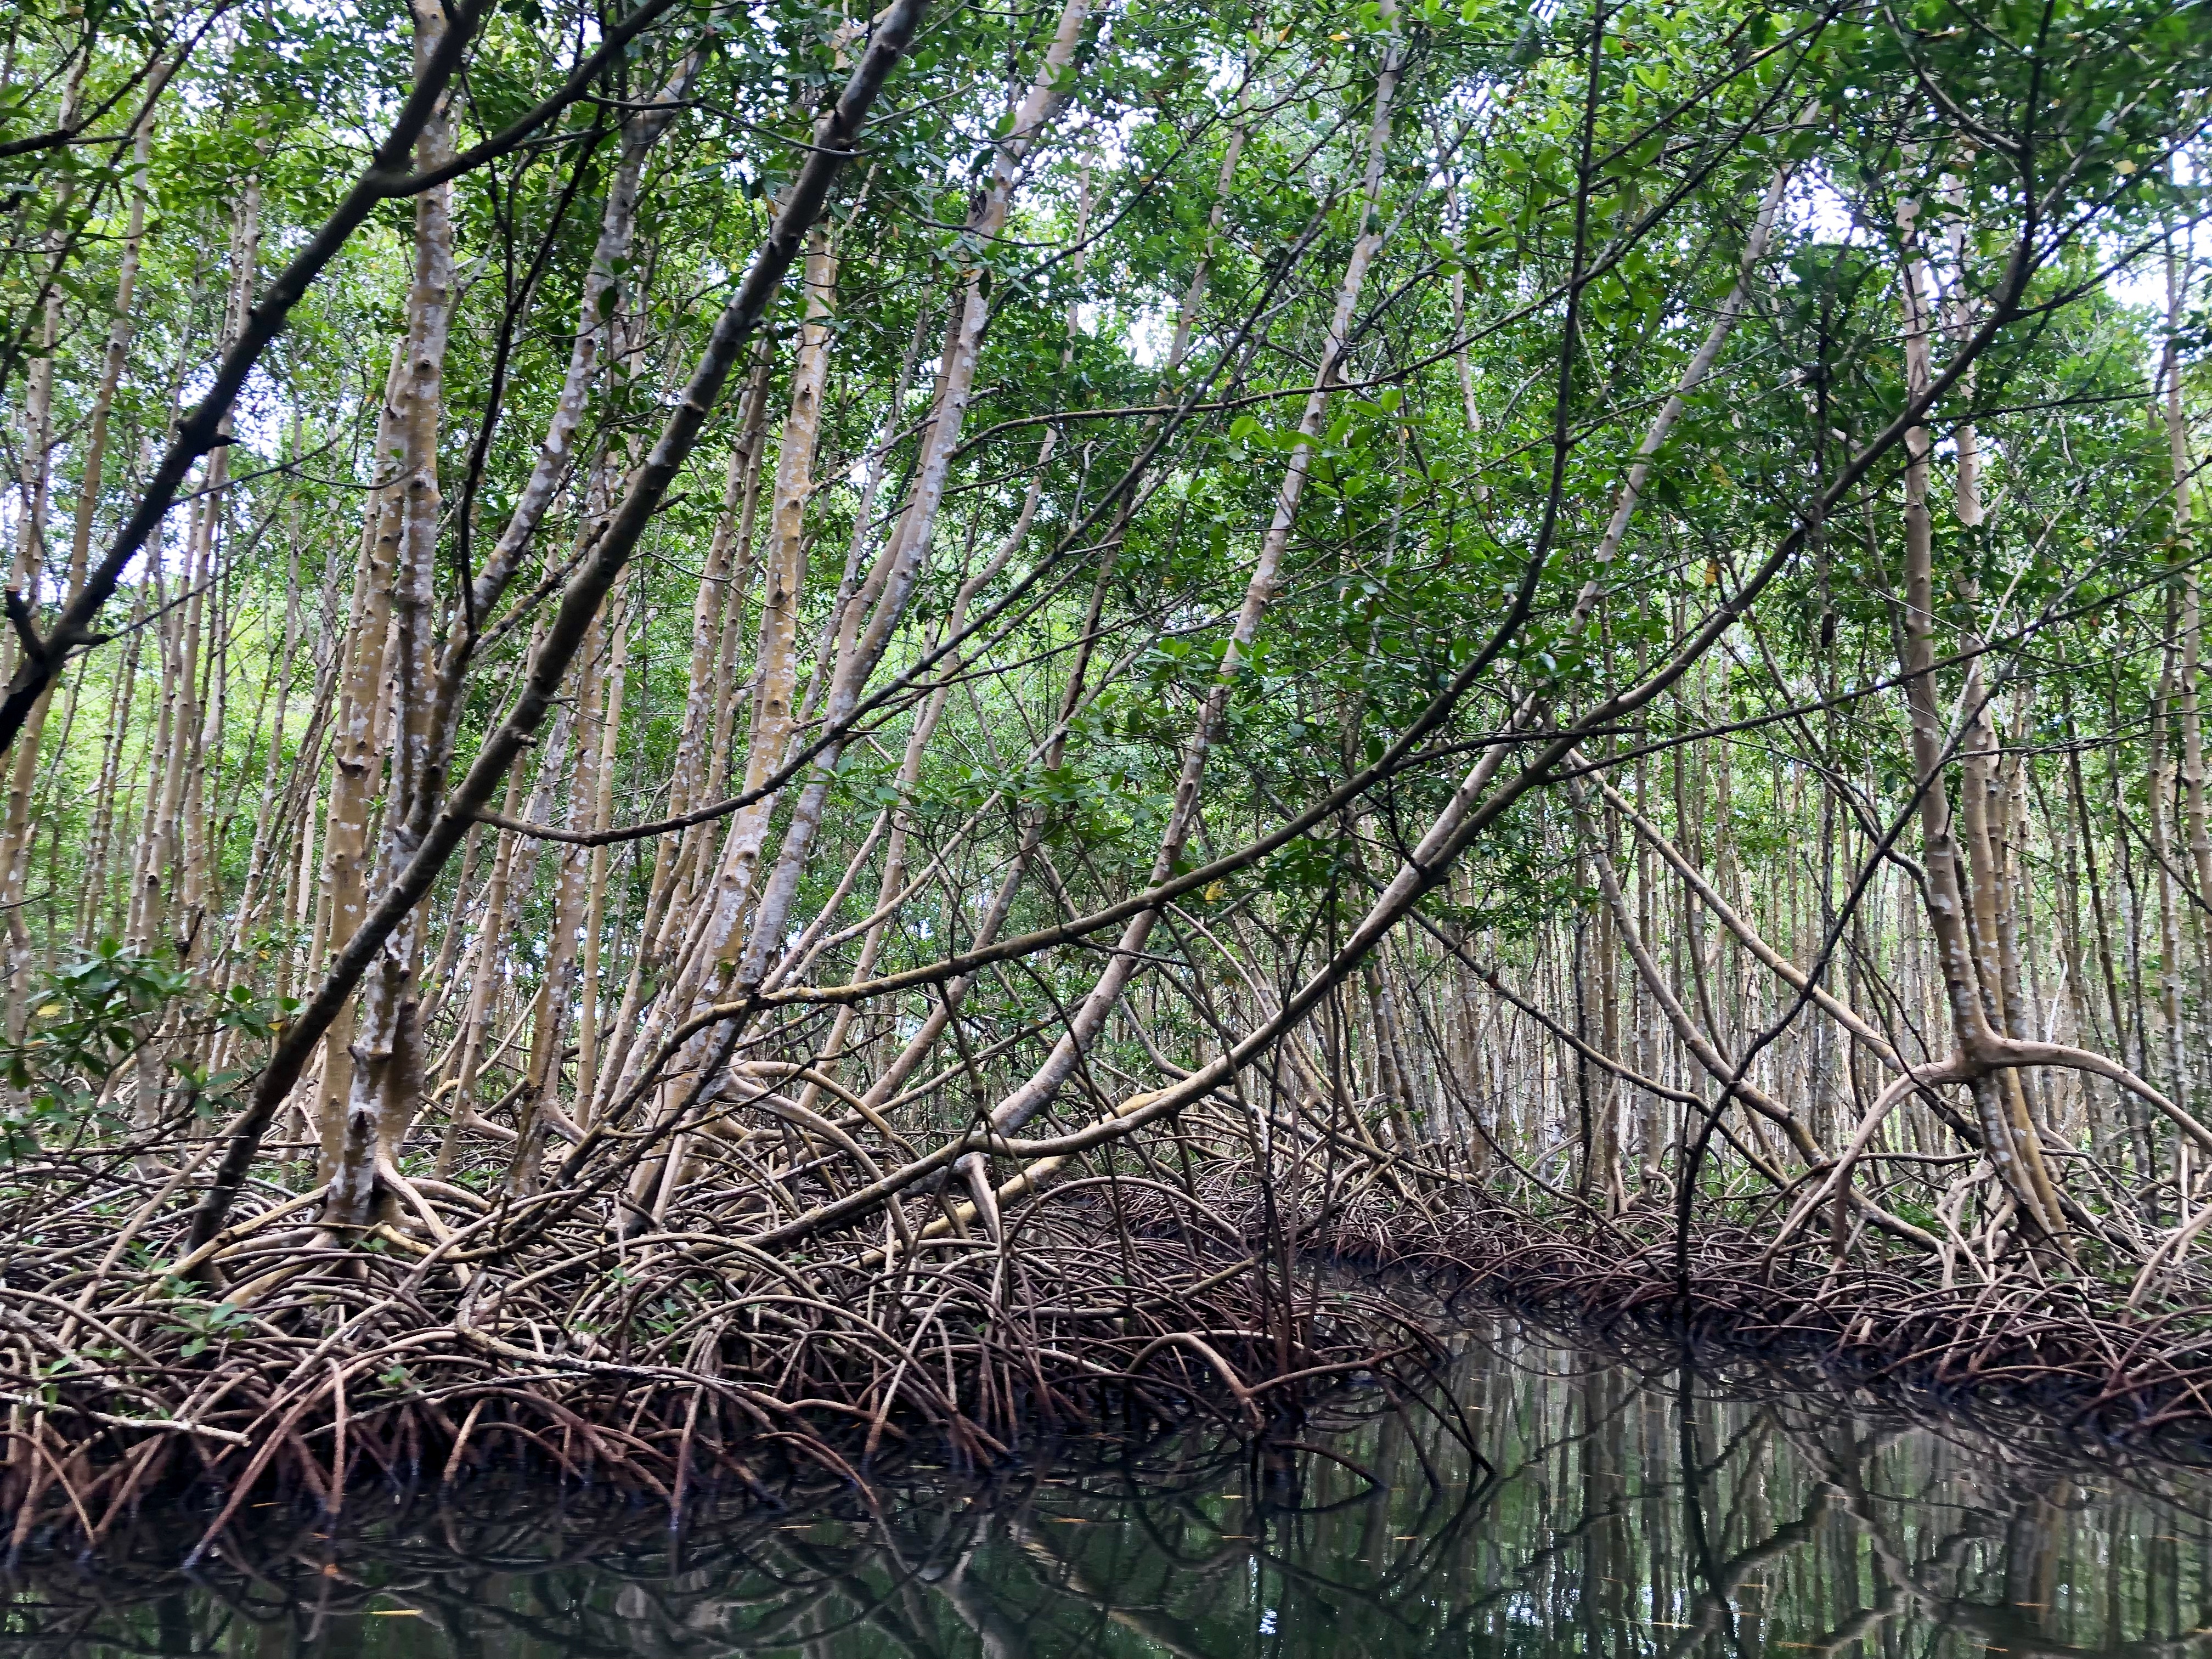     La ville du Lamentin lance une opération de sauvegarde de la mangrove

